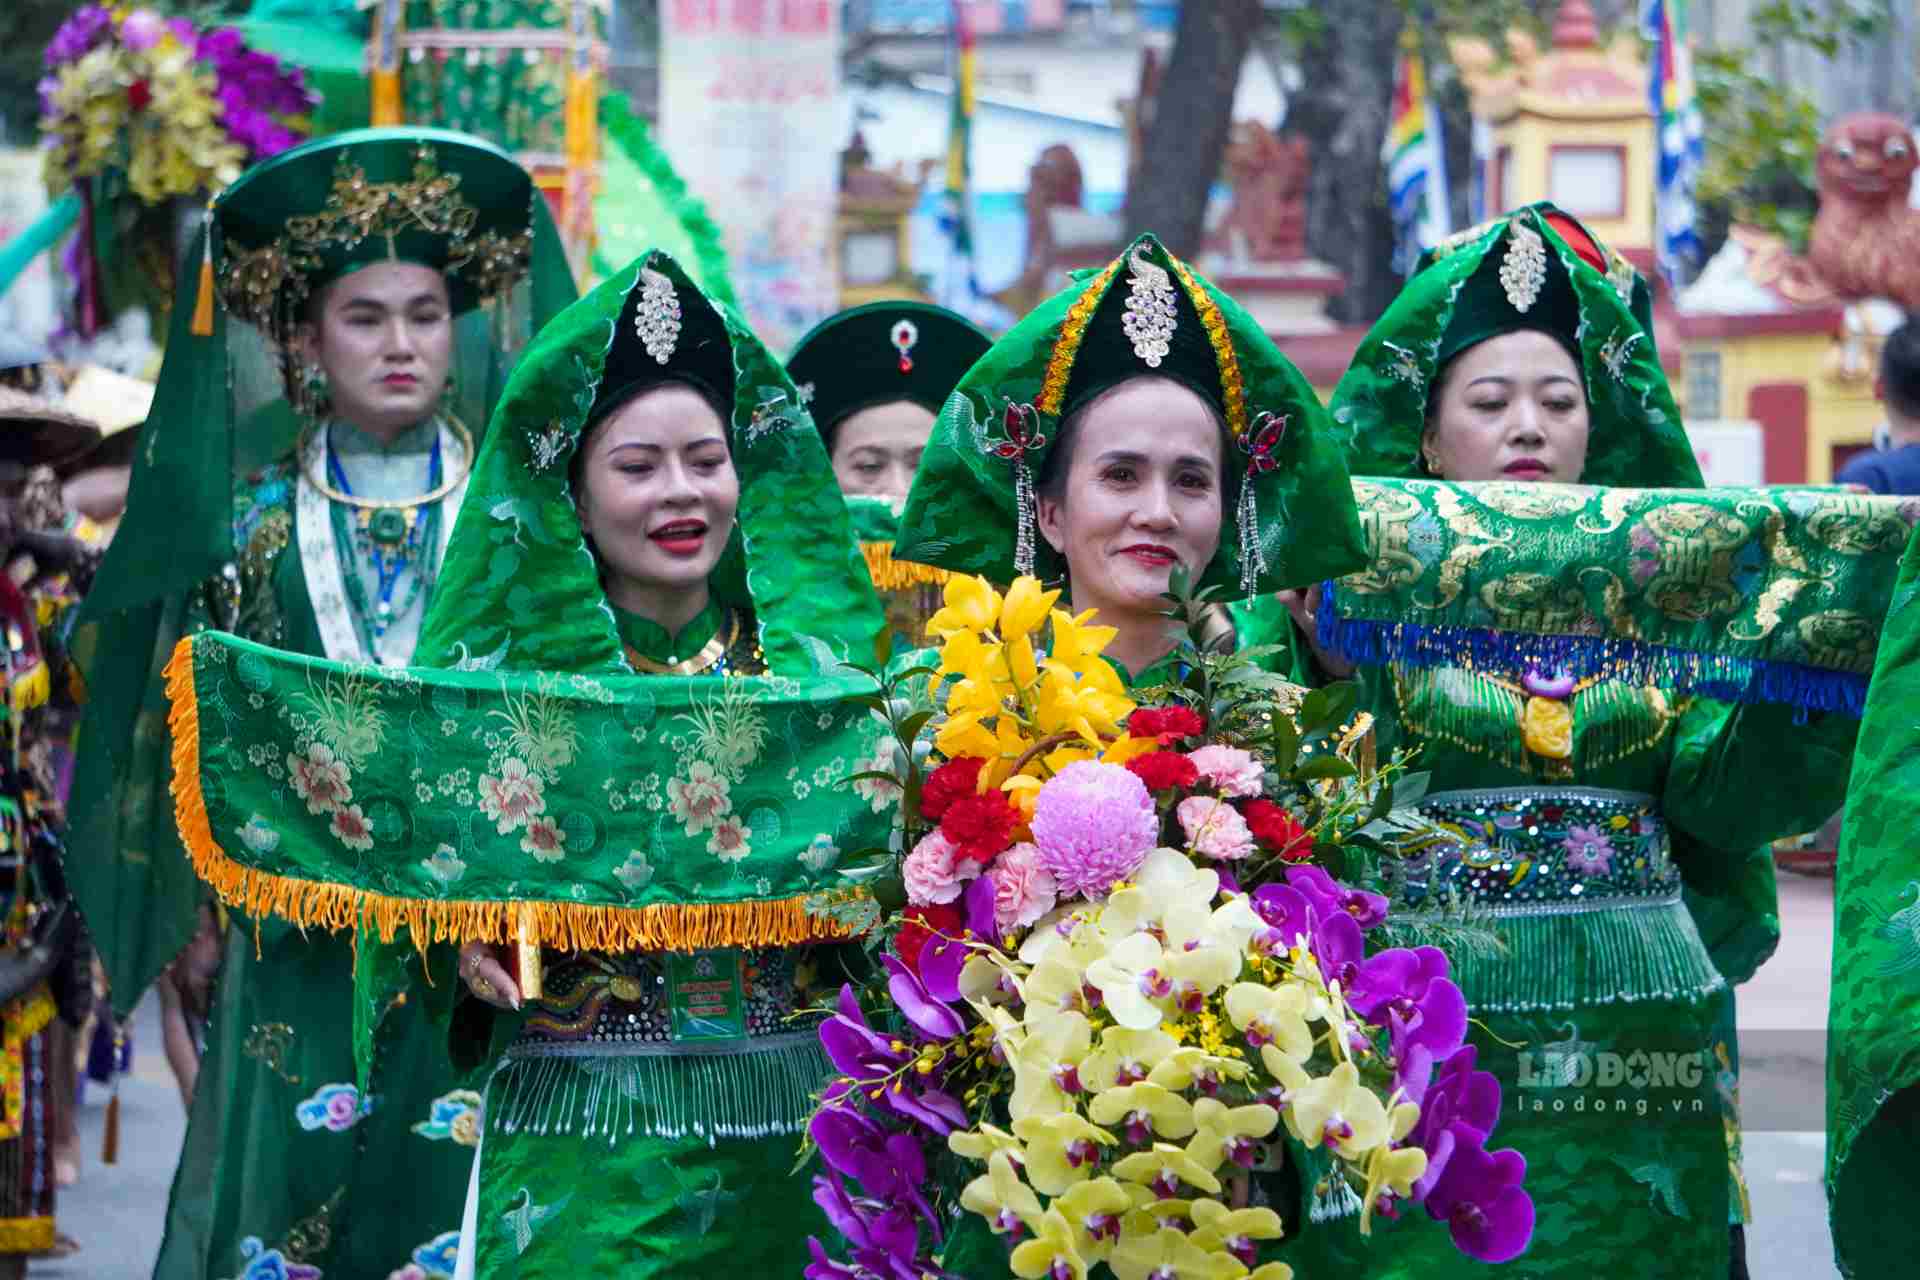 Đây cũng được xem là một lễ hội văn hóa dân gian truyền thống mang tính cộng đồng đặc trưng của vùng đất Cố đô.